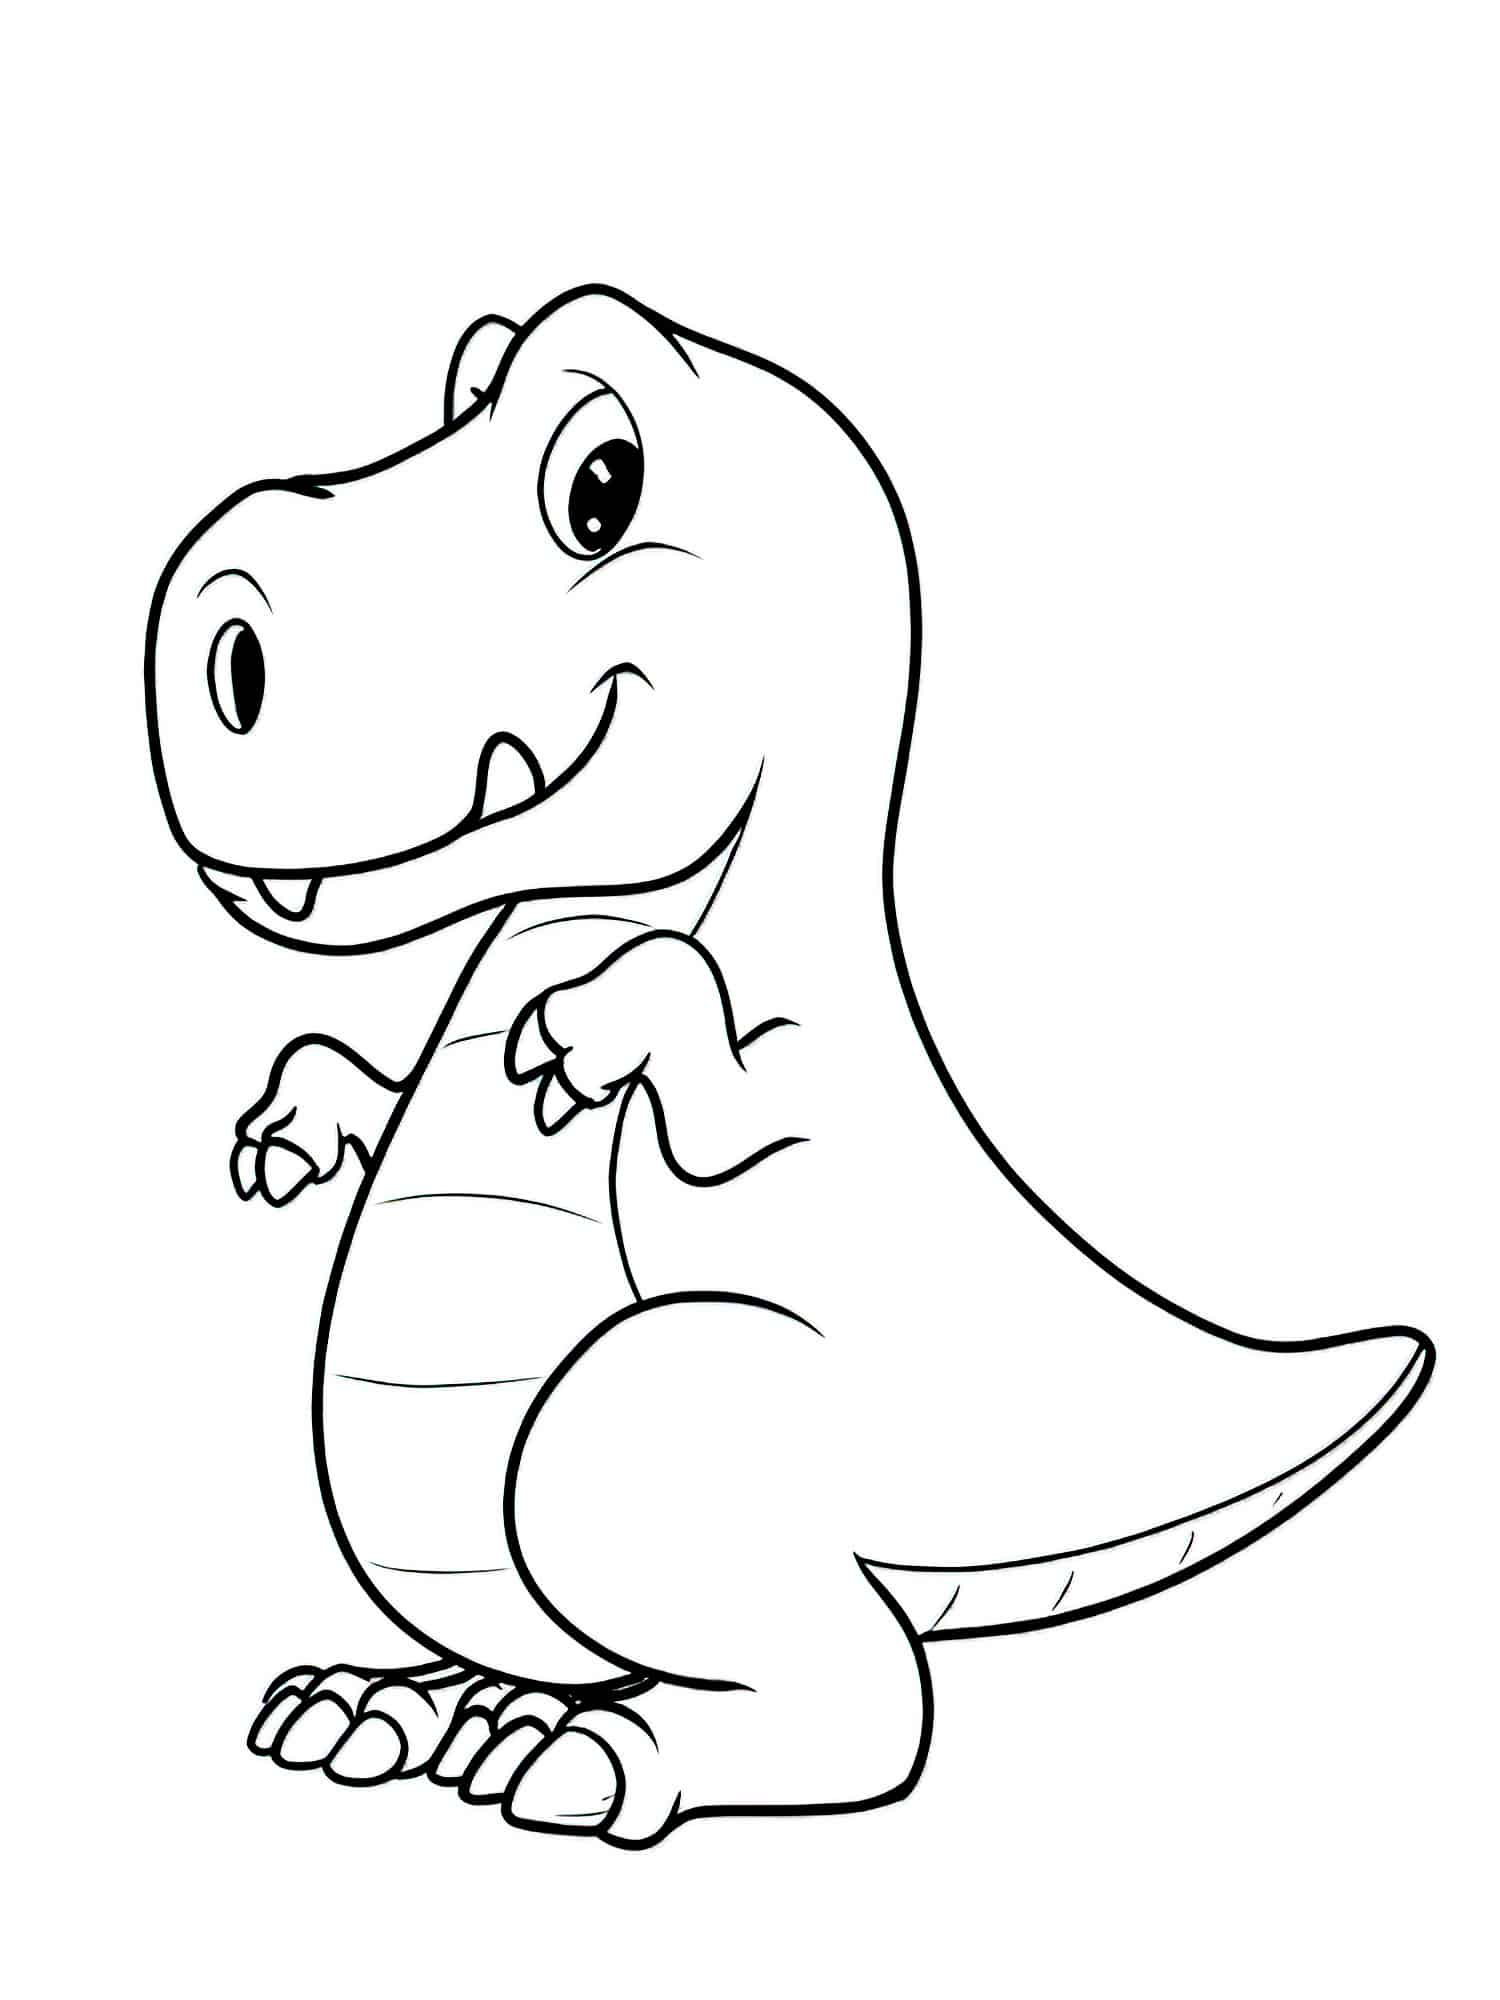 דף צביעה דינוזאור חמוד